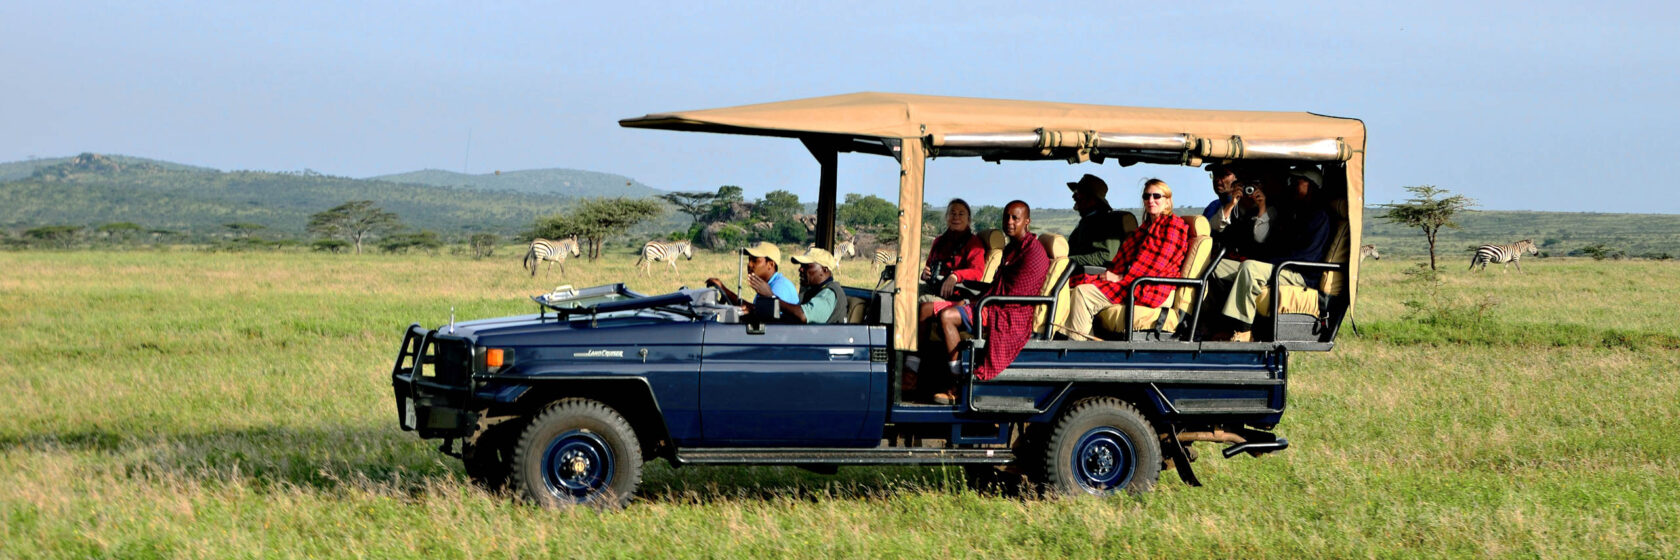 Safari vehicle with travelers.